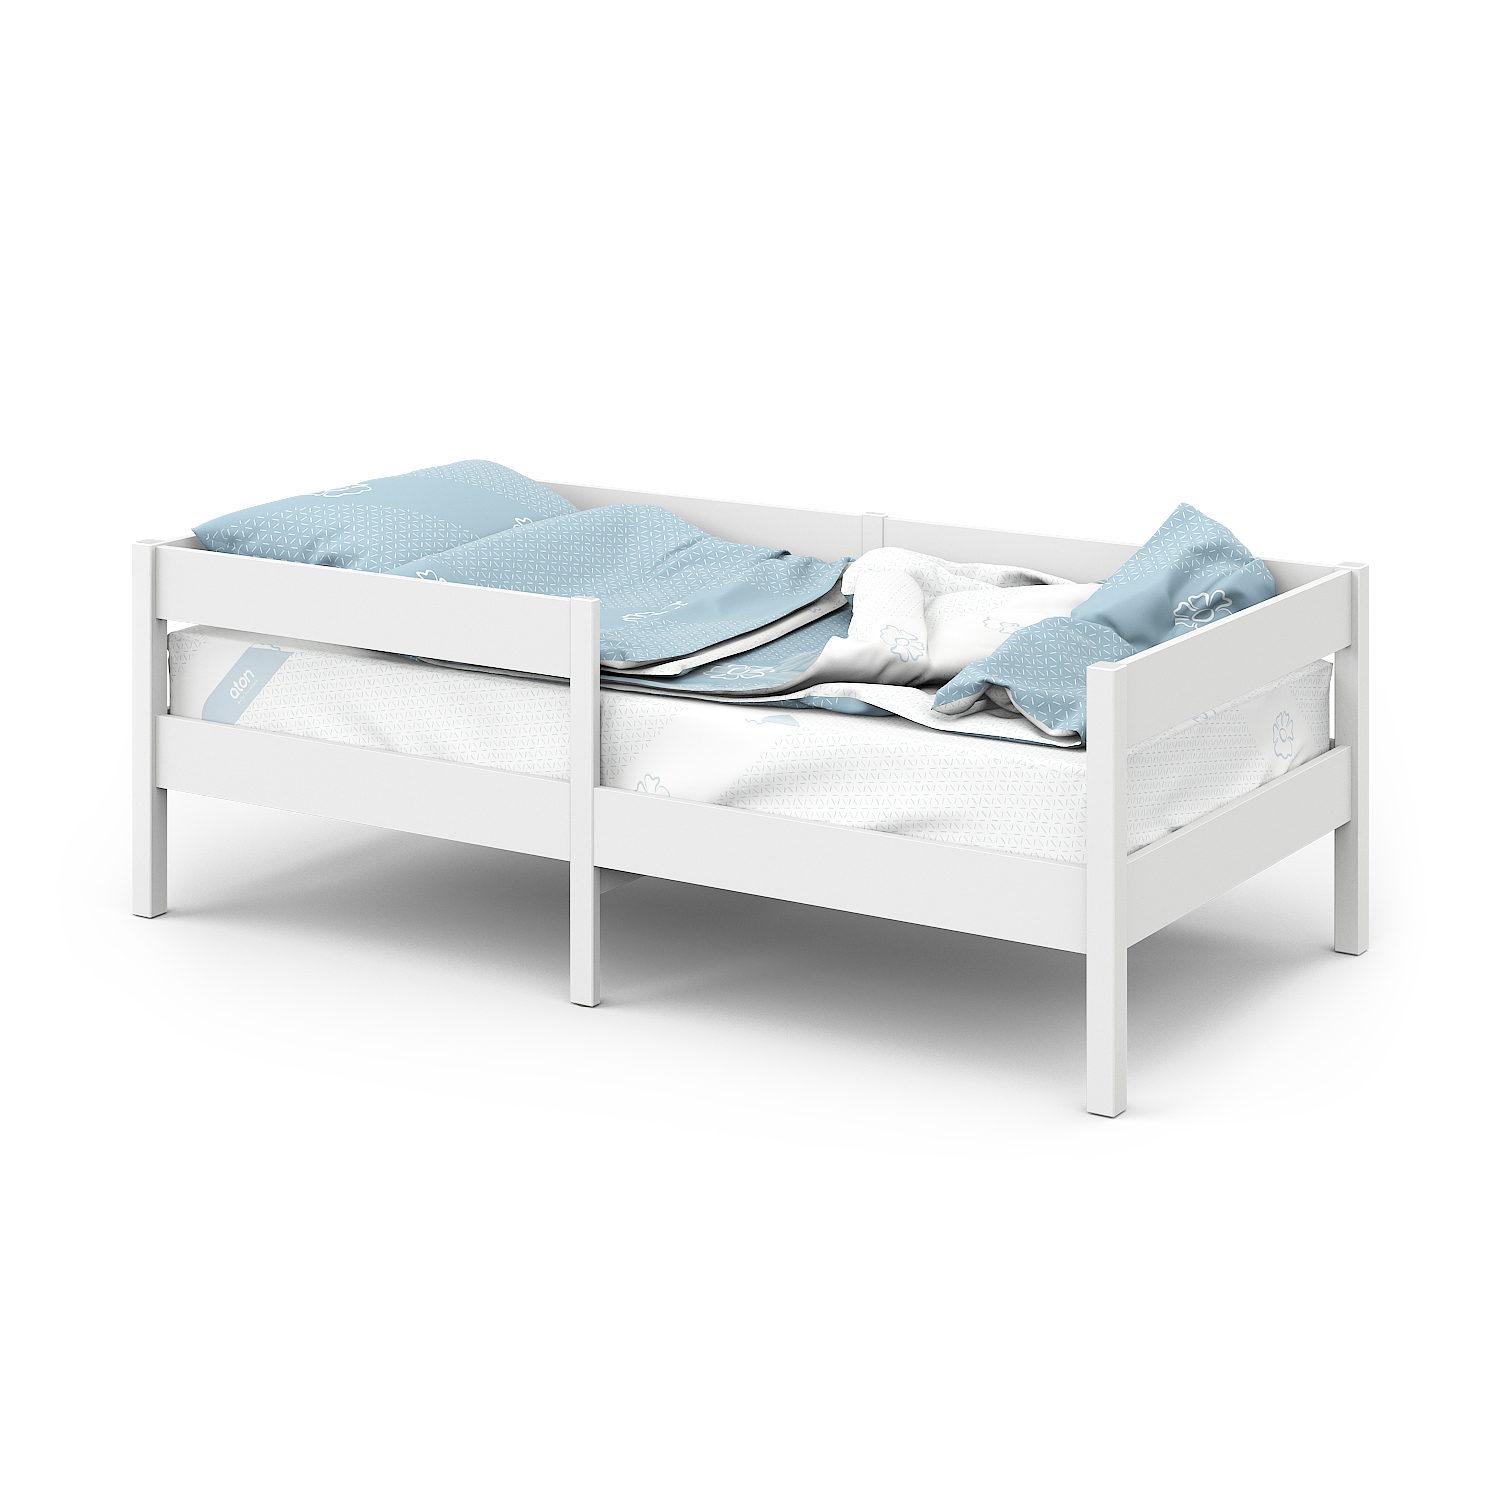 Кровать детская Атон Мебель СОФА СКАНДИ, 160х80, белый-белый